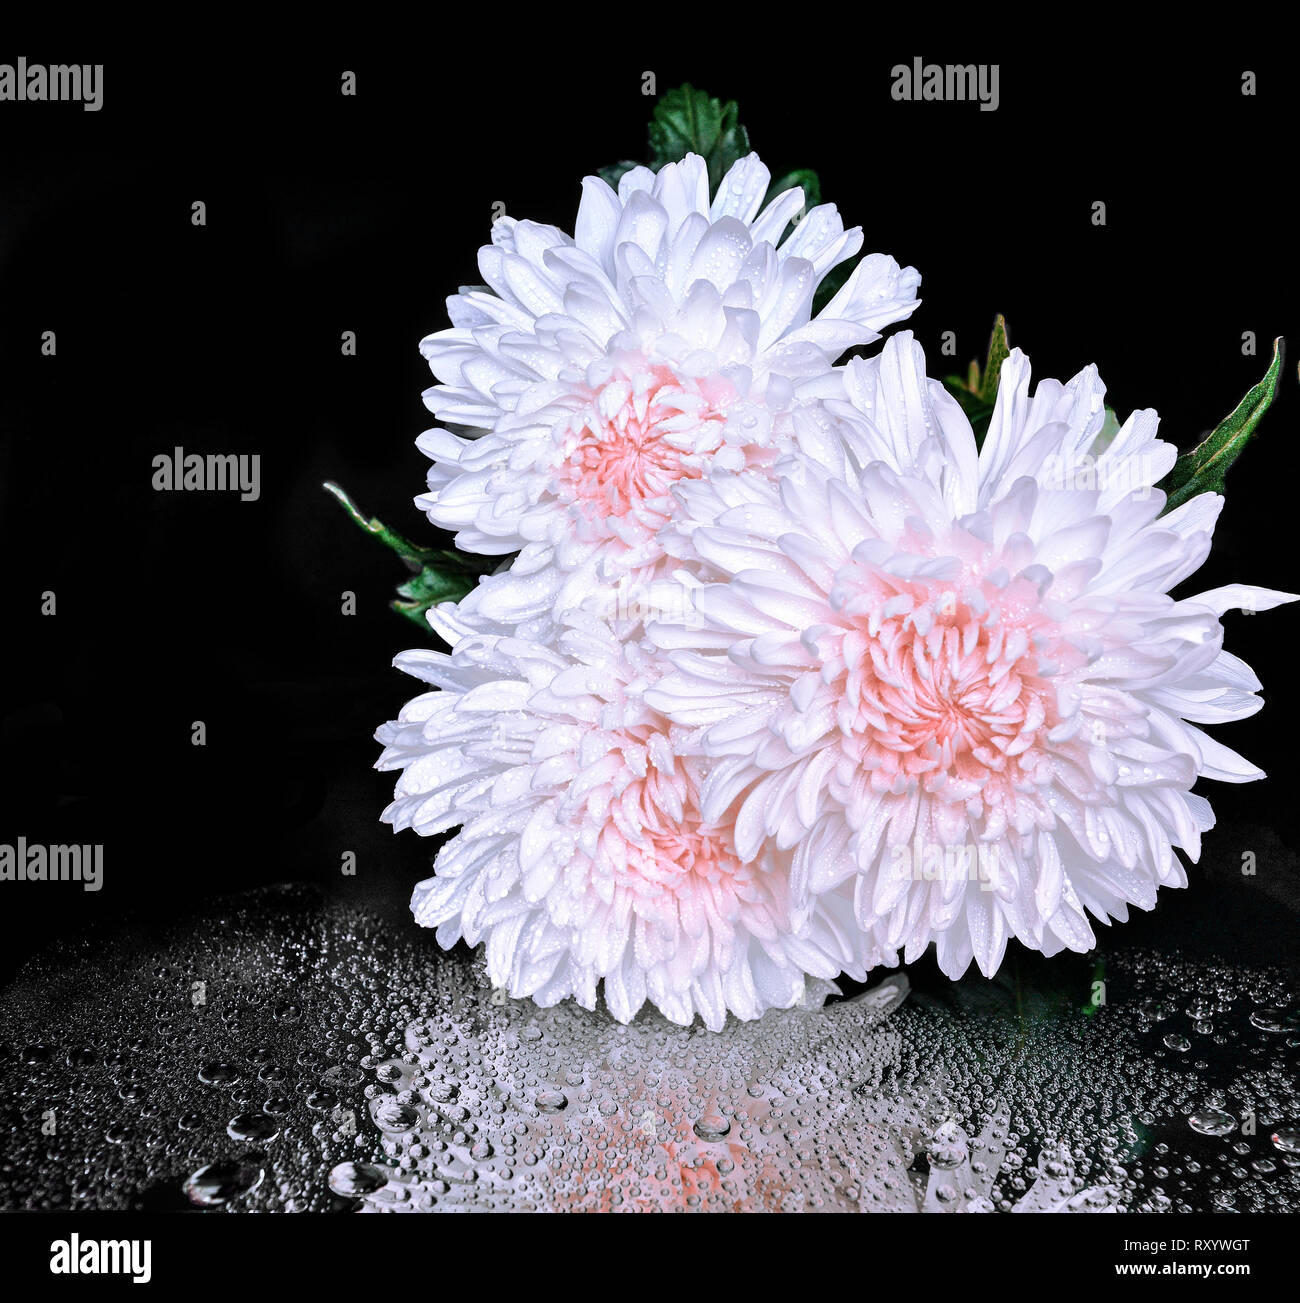 Drei weiße Tau chrysantheme Blüten mit rosa Zentrum auf schwarzem Hintergrund mit Wassertropfen und Reflexion. Konzept von Reinheit, Harmonie und Frische f Stockfoto